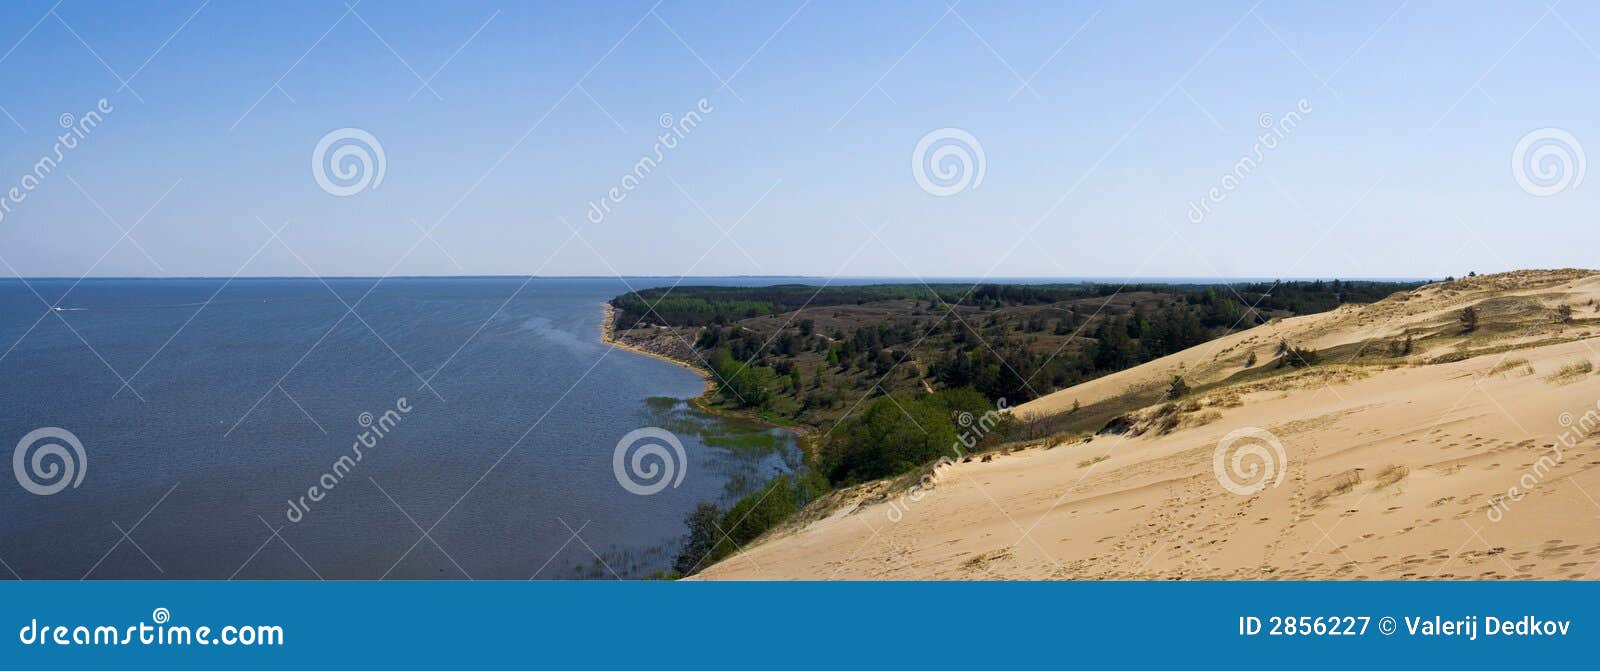 Panorama. Vista panorâmico das dunas com costa do mar Báltico. posição: nida, lithuania